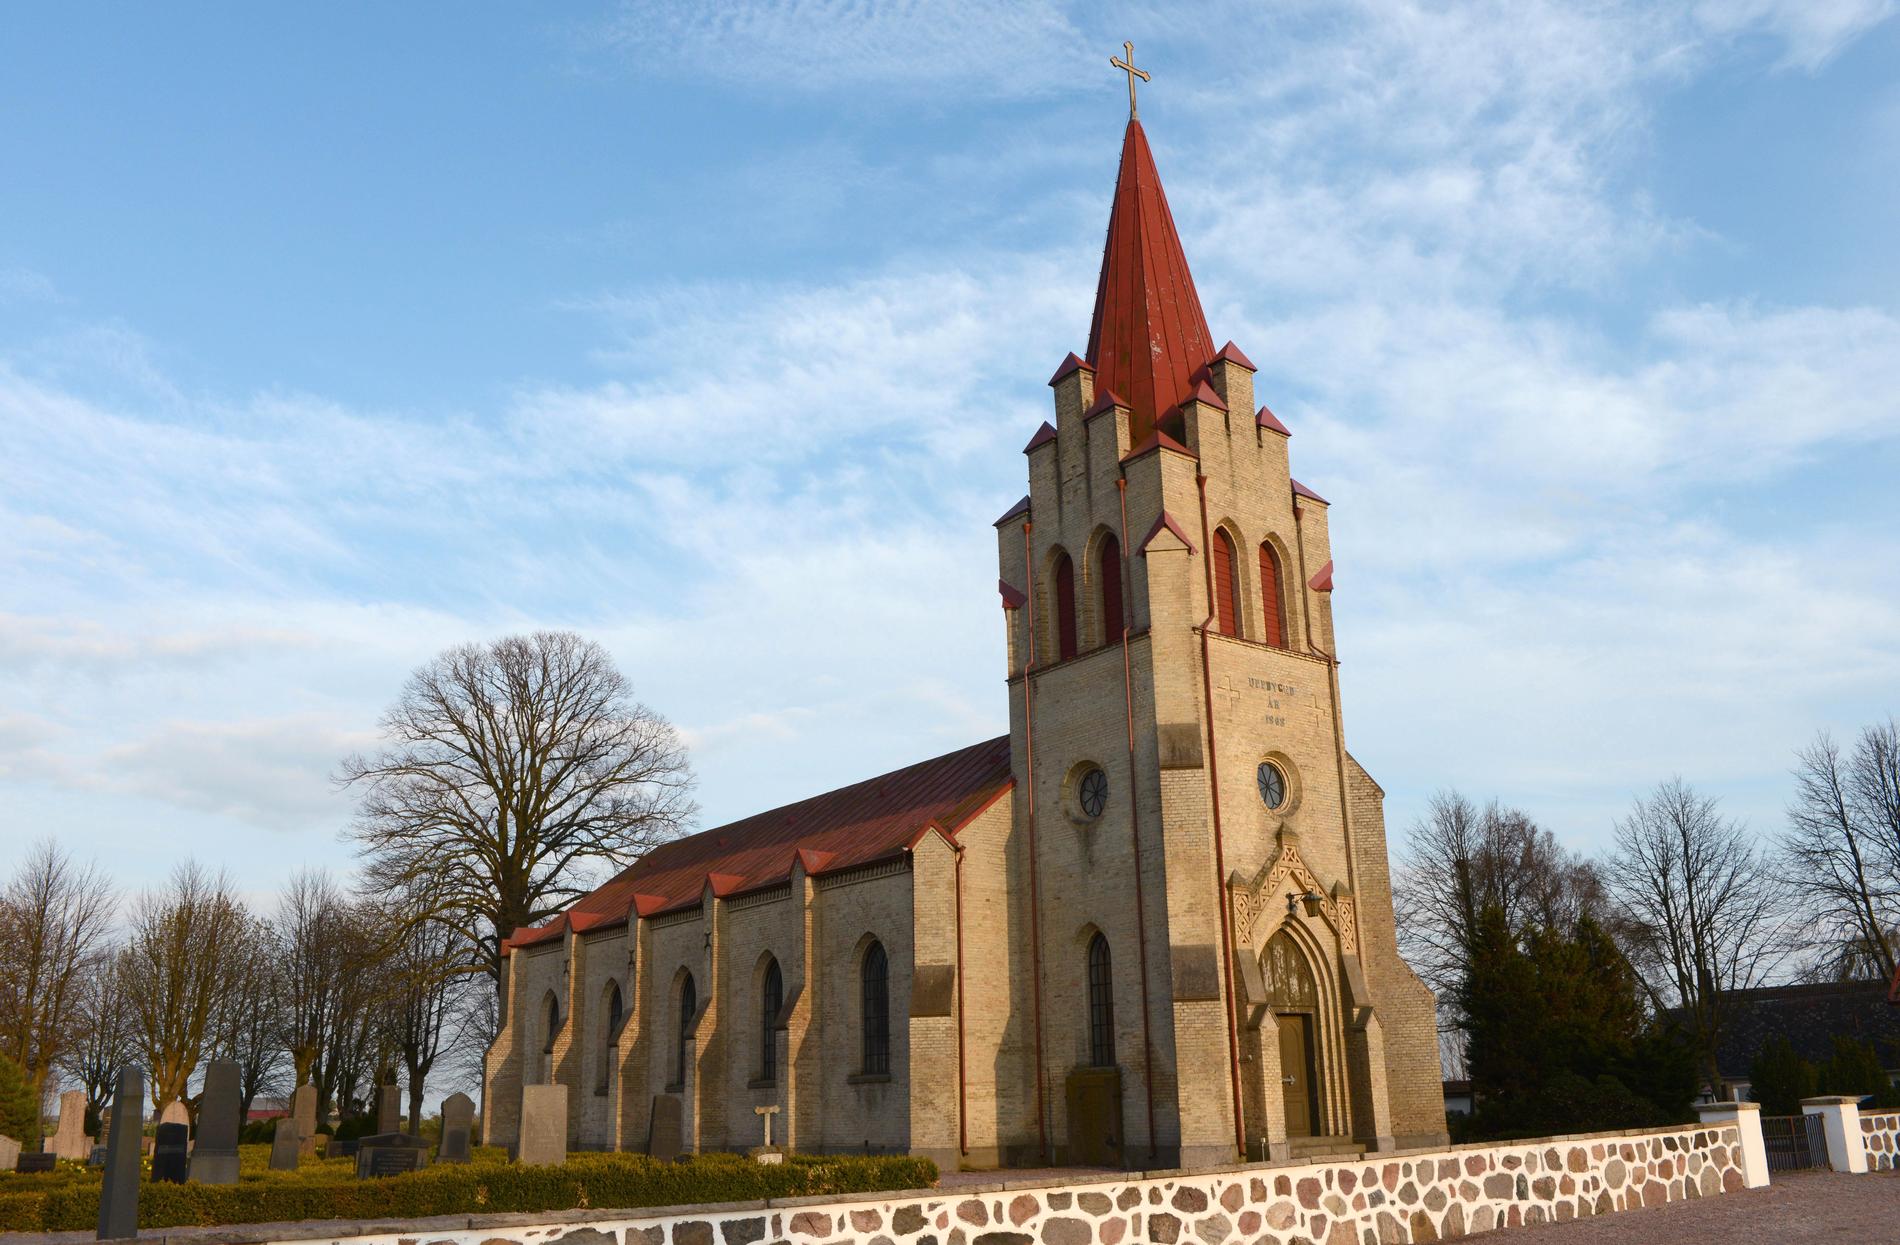 Örja kyrka i Landskrona såldes till en privatperson för en krona. Köparens avsikt var att göra om den till bostad. Arkivbild.